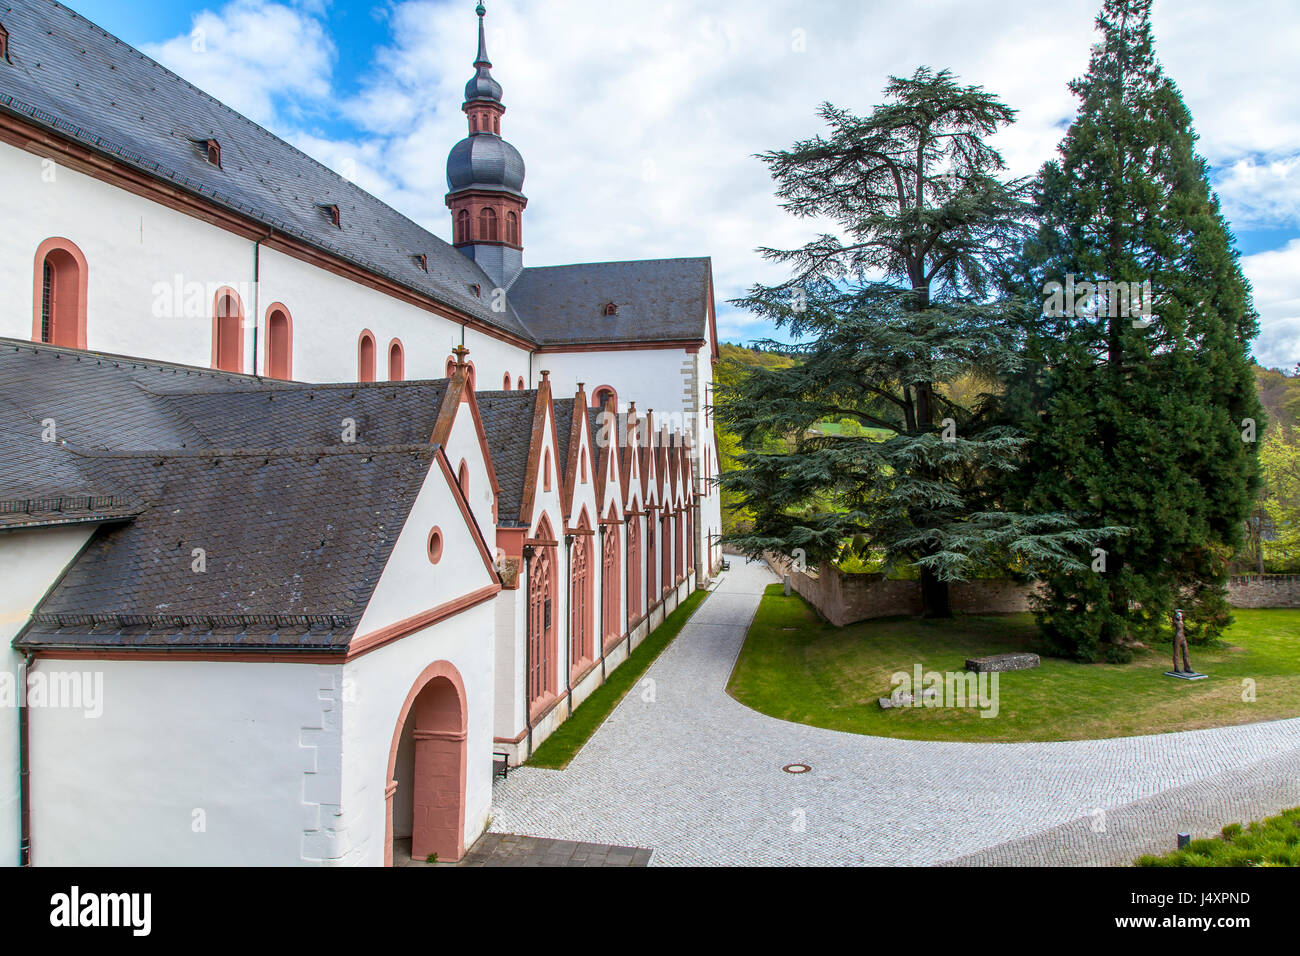 Kloster Eberbach in Eltville am Rhein im  Rheingau  Germany Stock Photo